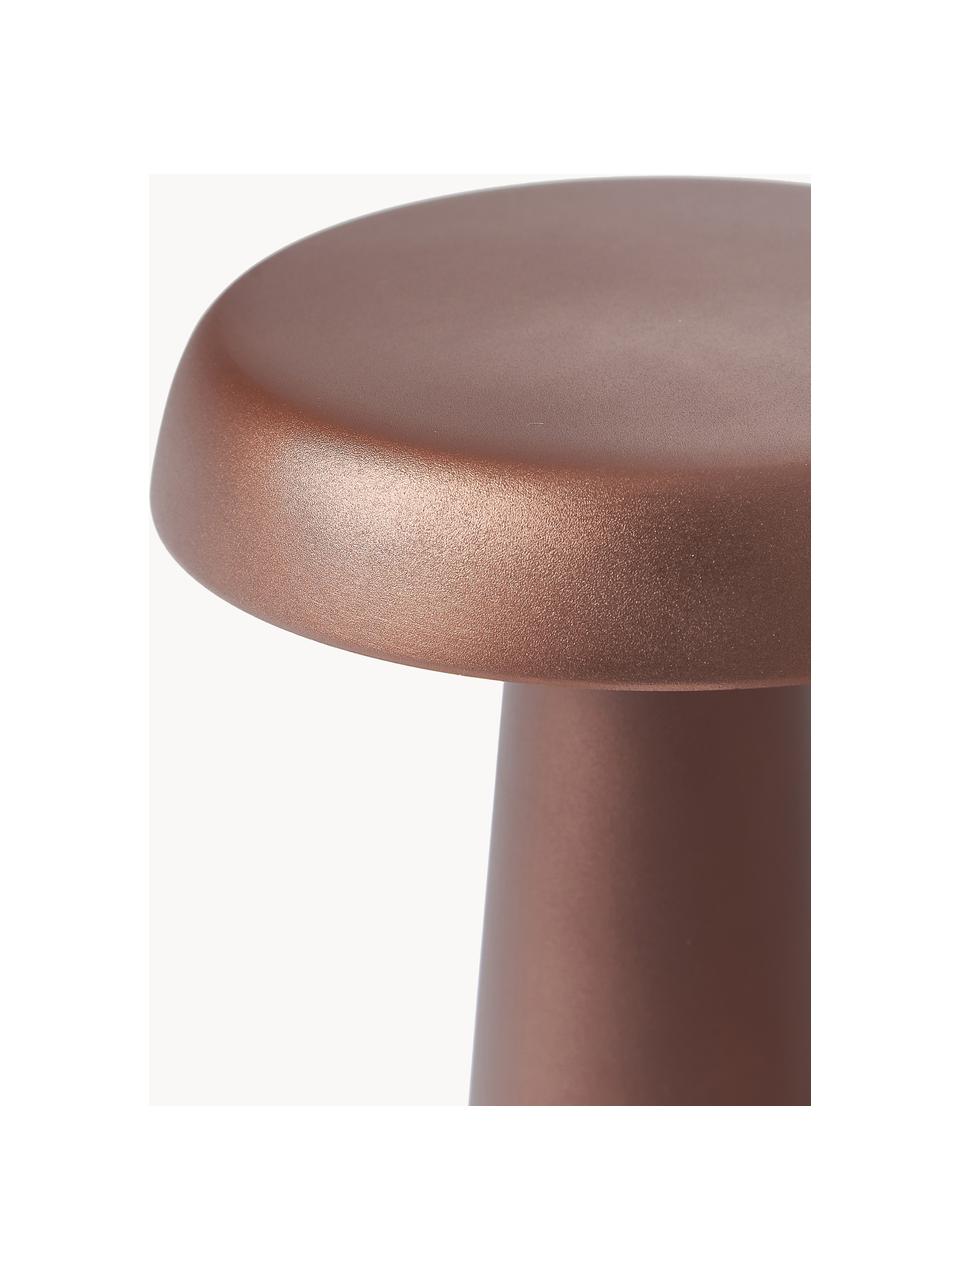 Lámpara de mesa para exterior LED Arcello, Metal anodizado, Marrón rojizo, Ø 14 x Al 25 cm